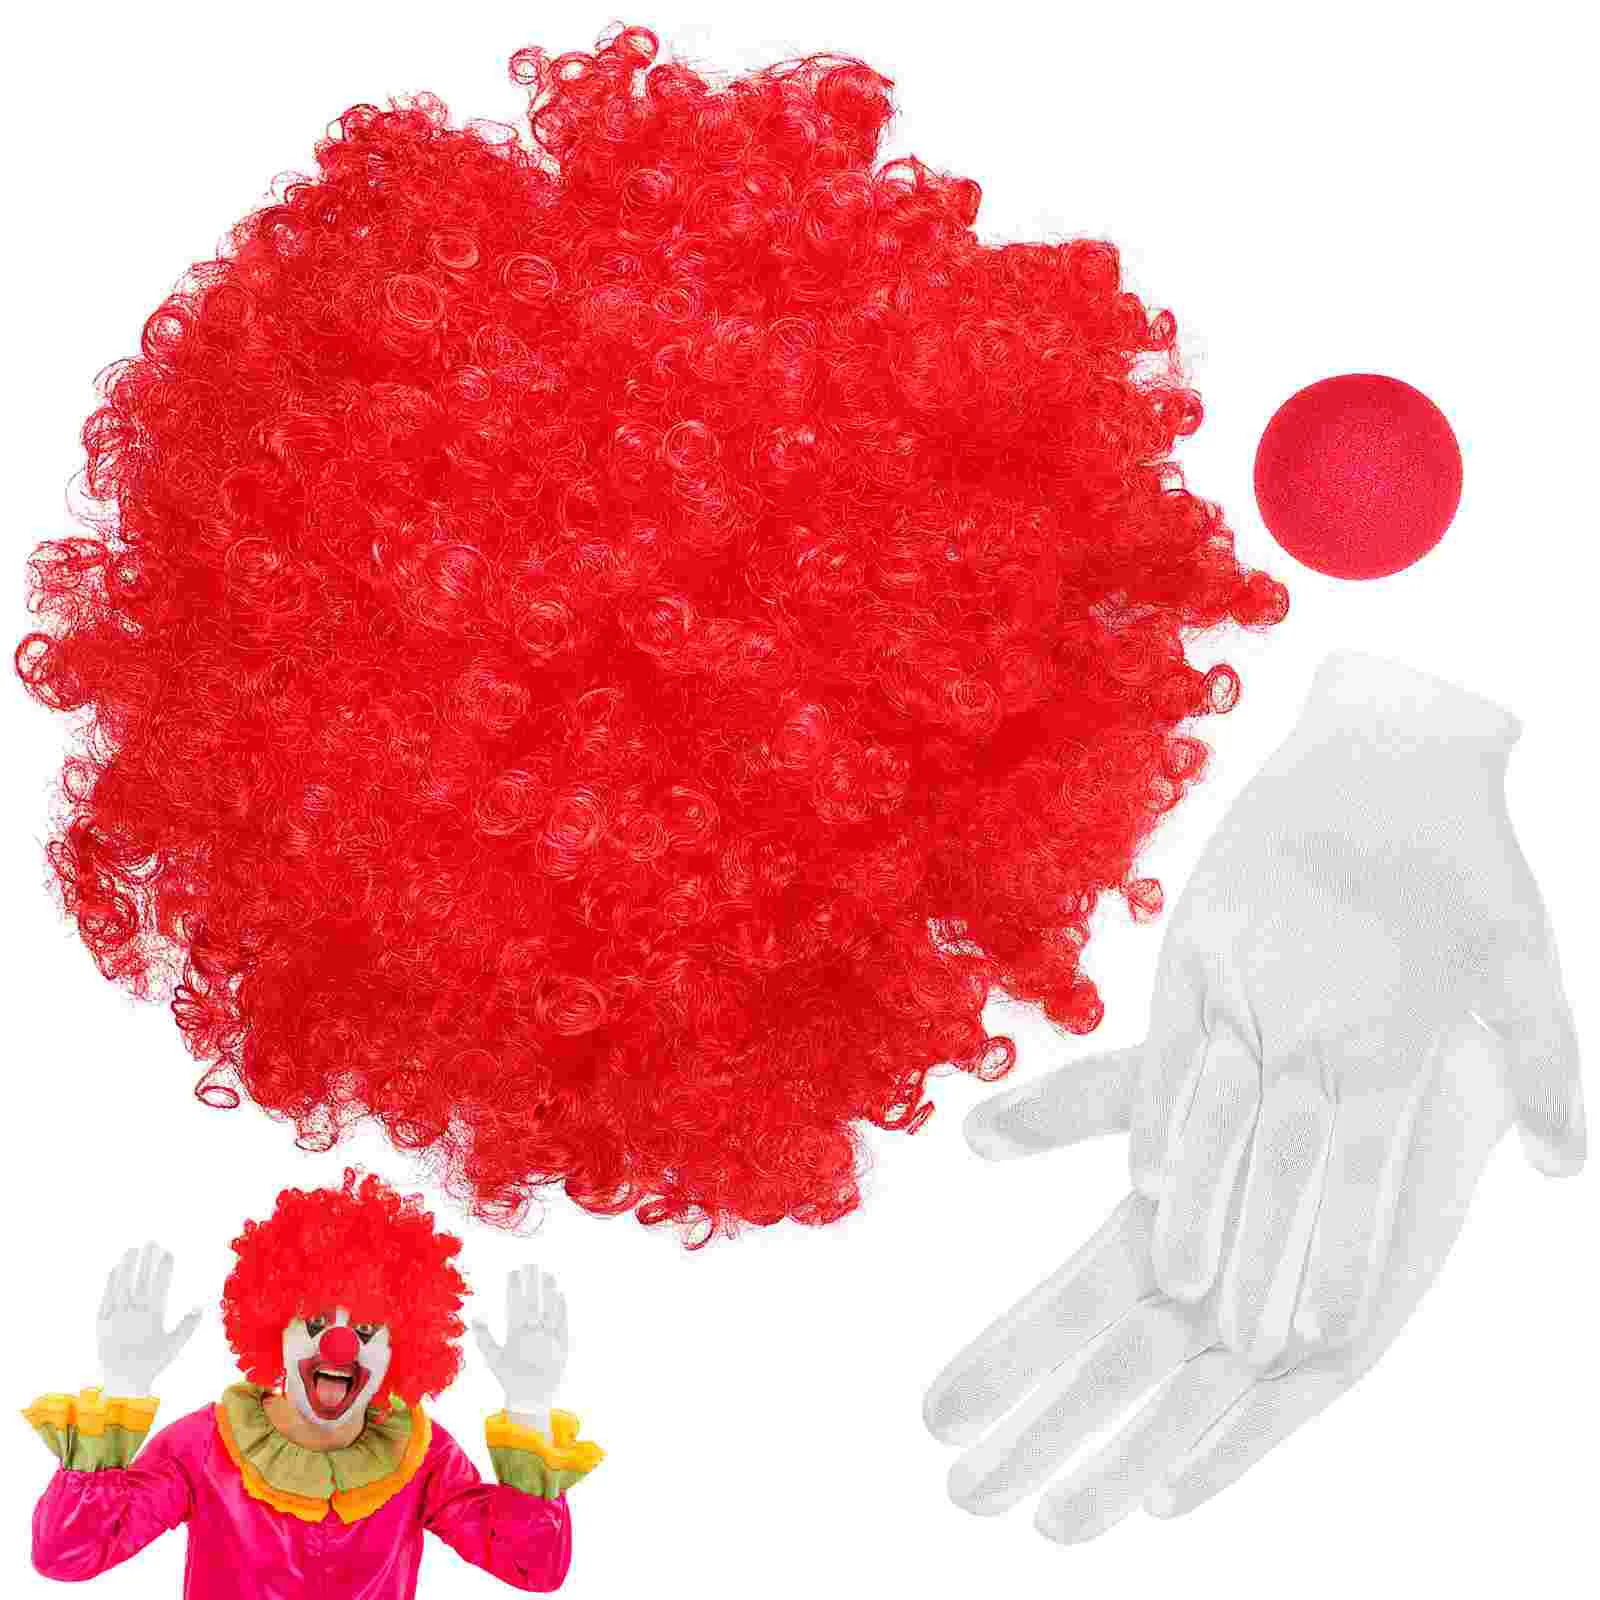 

Реквизит для косплея клоуна 1 комплект перчатки для выступления в носу клоуна аксессуары для костюмированной сцены